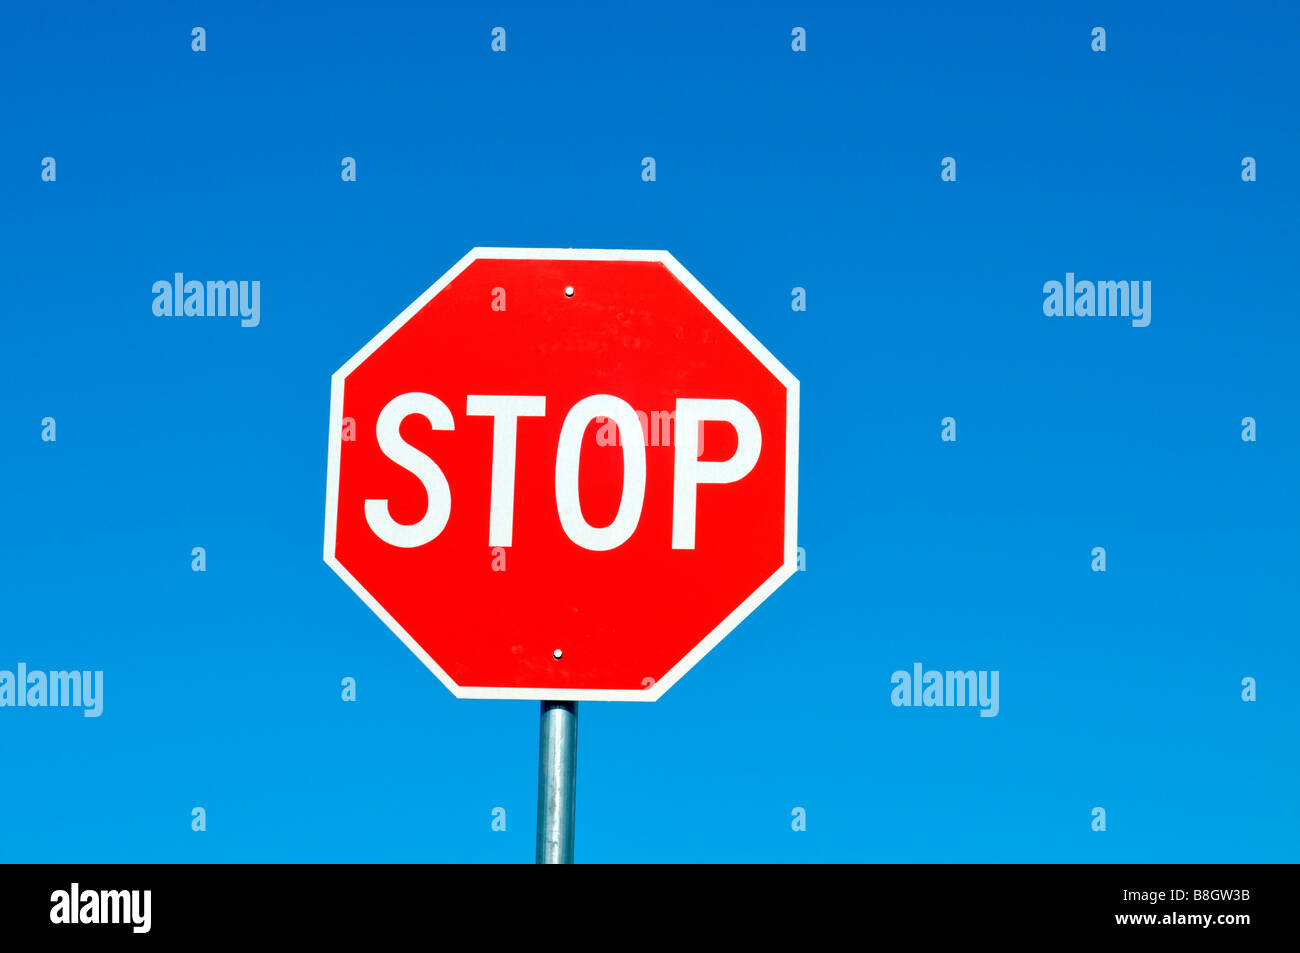 Señal de stop rojo y blanco sólido contra el cielo azul claro Foto de stock